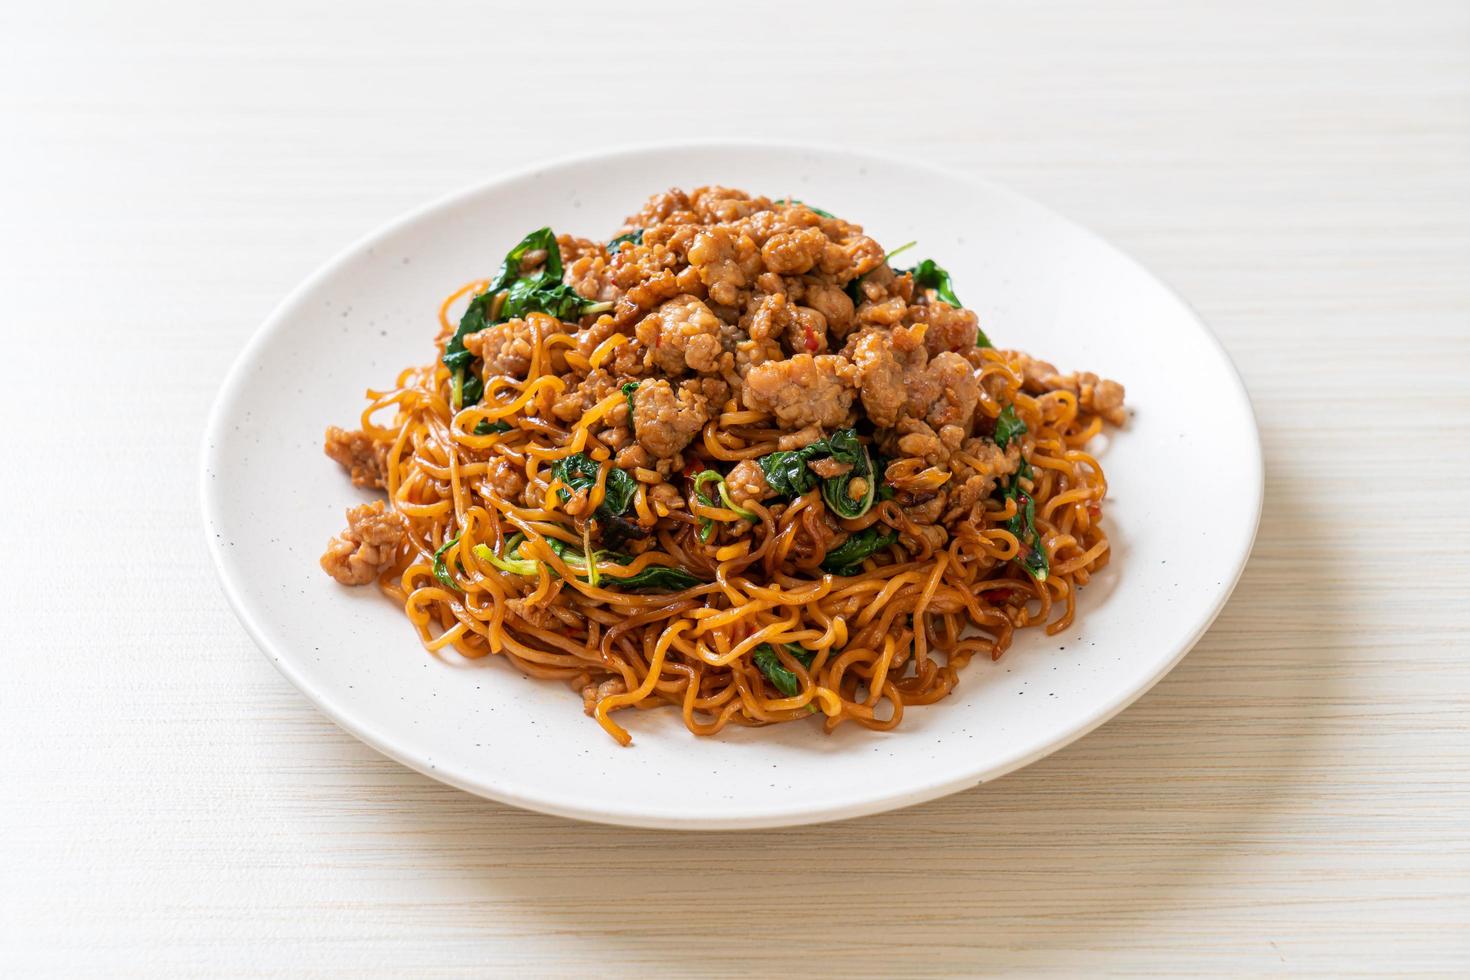 noodles istantanei saltati in padella con basilico tailandese e carne di maiale macinata - stile asiatico foto